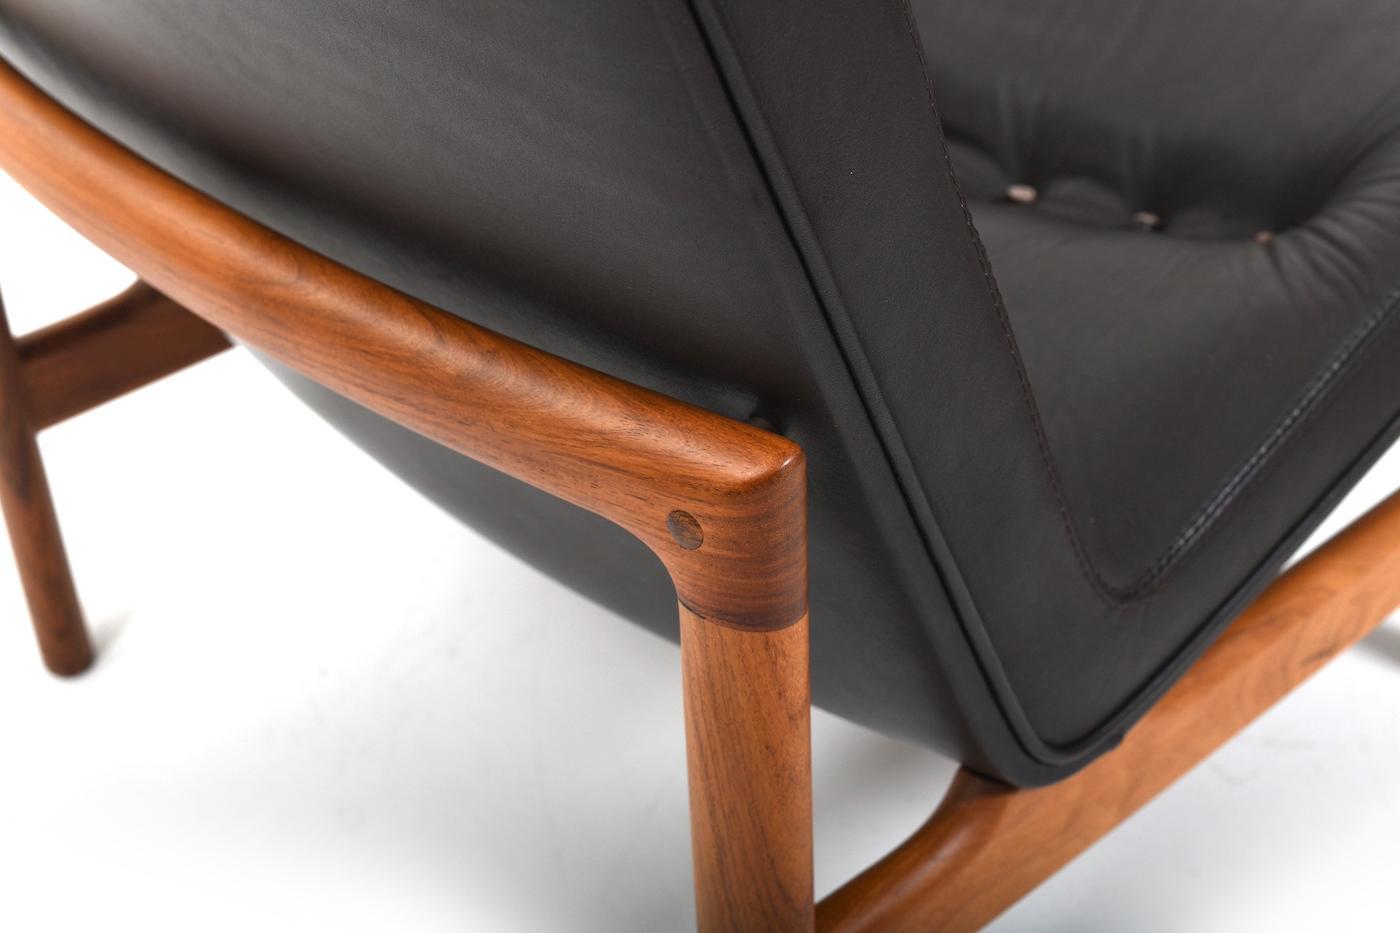 Selten angebotene Sessel mit dunkelbraunem Leder und schönem Holzgestell (Palisander) von Sven Ellekaer / Ellekaer für Søren Willadsen Dänemark 1960er Jahre. Modell 